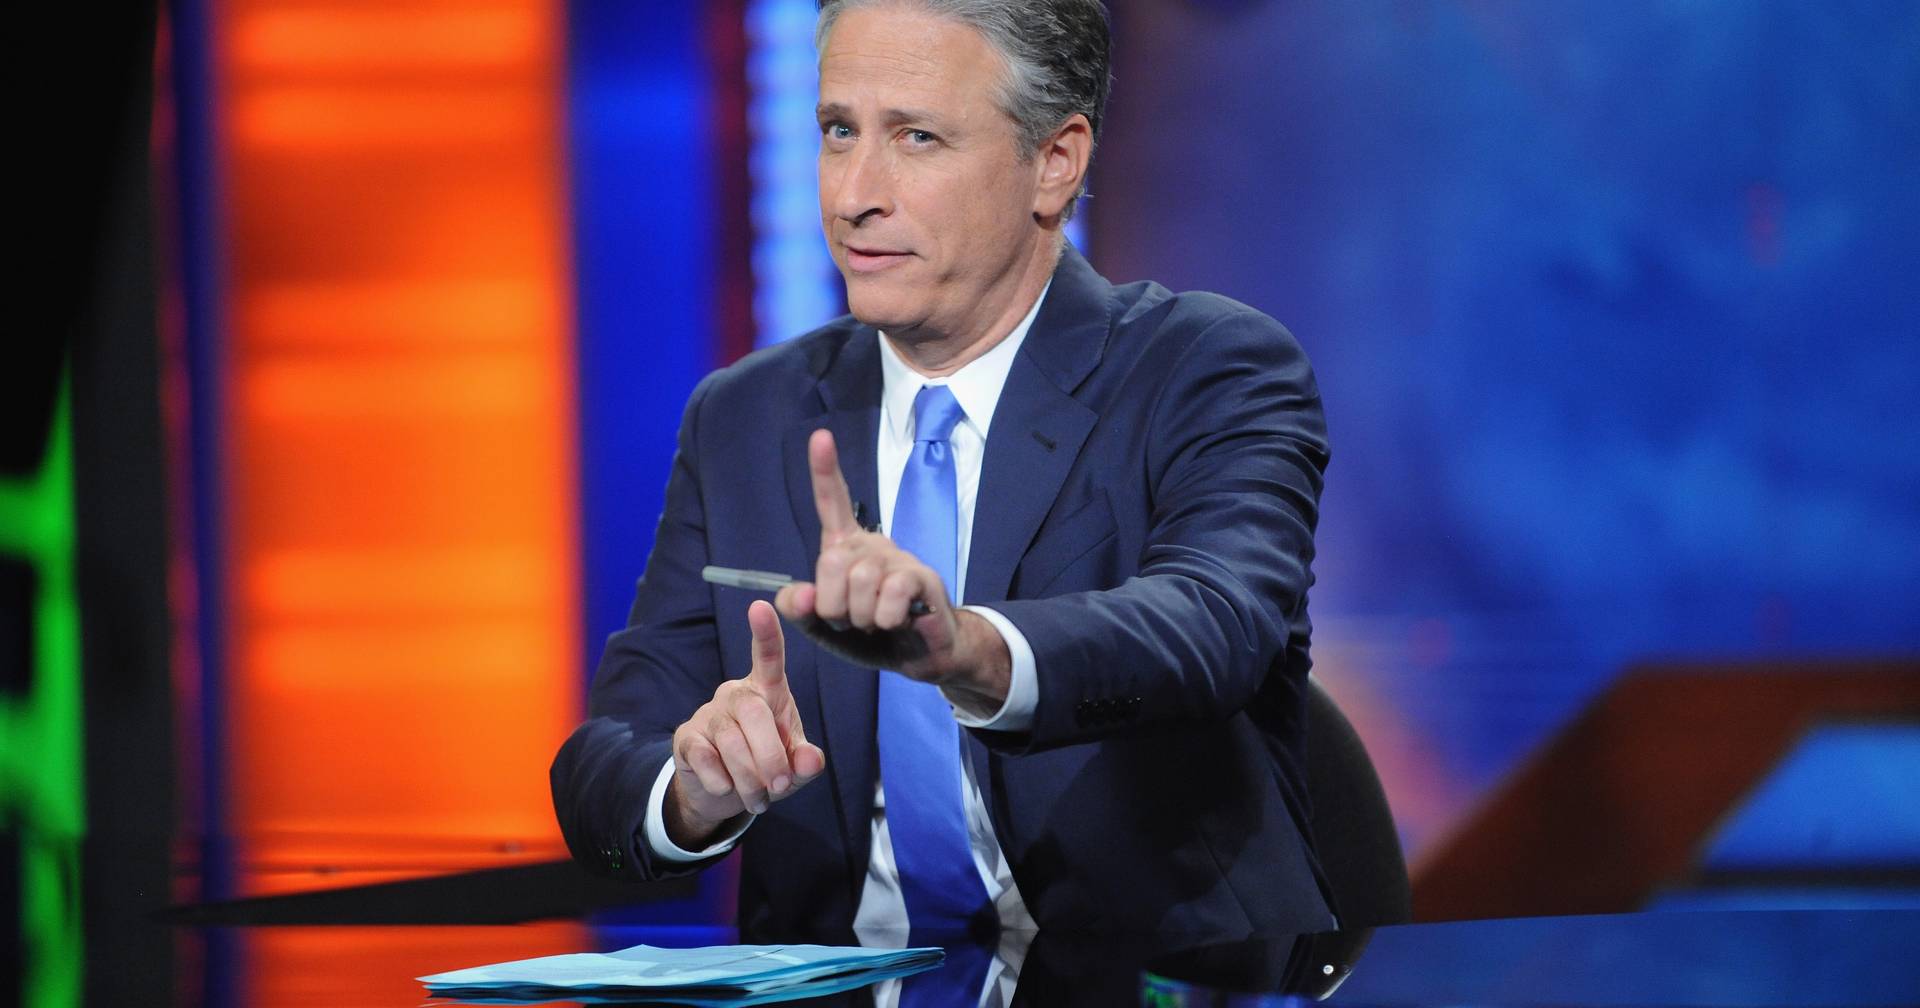 Jon Stewart kehrt im US-Wahljahr als Moderator der Daily Show zurück